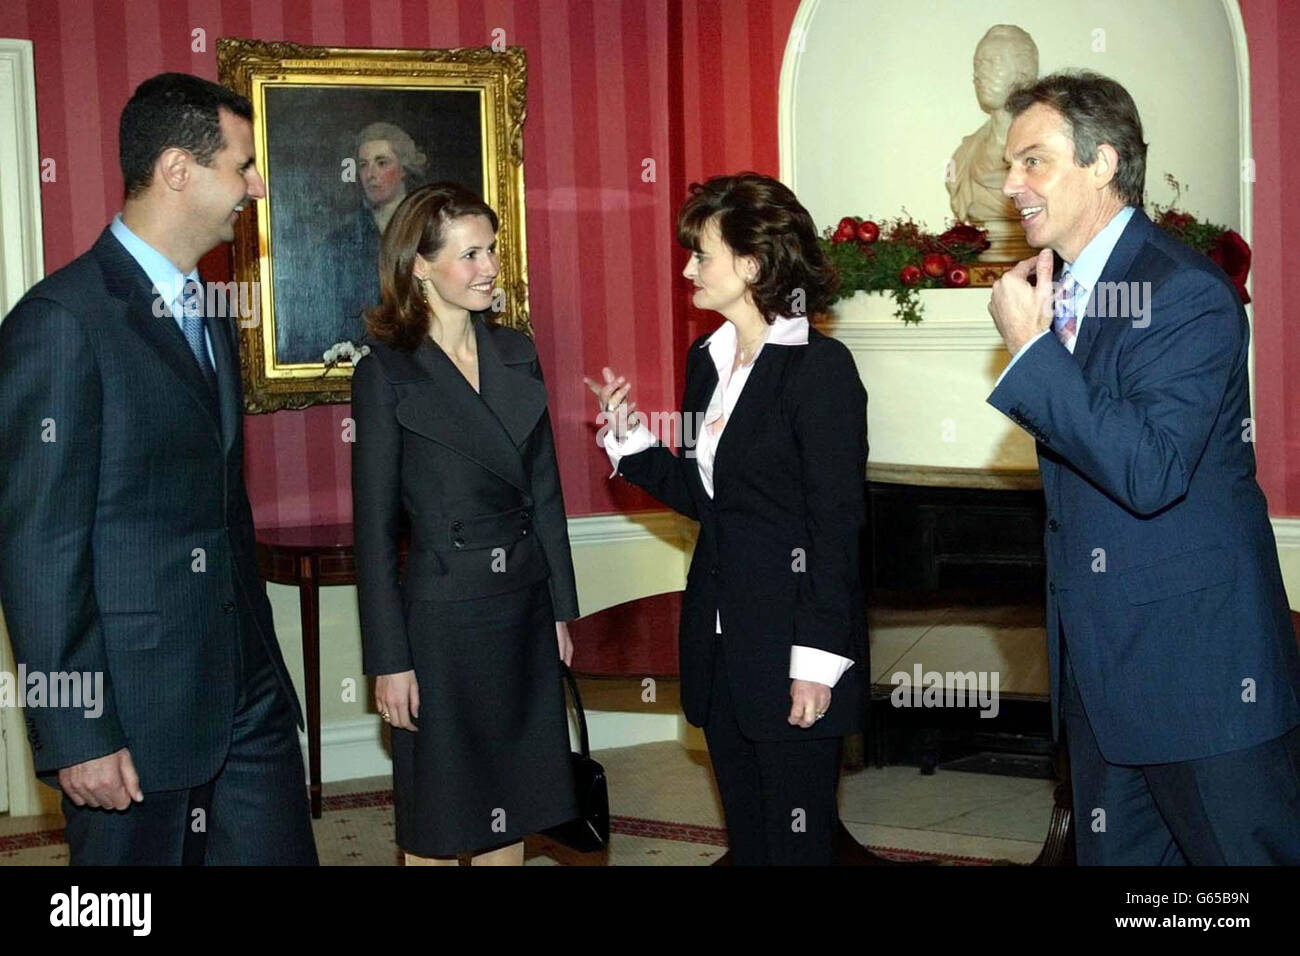 Il primo ministro britannico Tony Blair, a destra, e sua moglie Cherie, seconda a destra, con il presidente siriano Bashar al-Assad, a sinistra, e sua moglie Asma all'interno 10 Downing Street all'inizio della visita ufficiale di quattro giorni di Assad in Gran Bretagna. Foto Stock